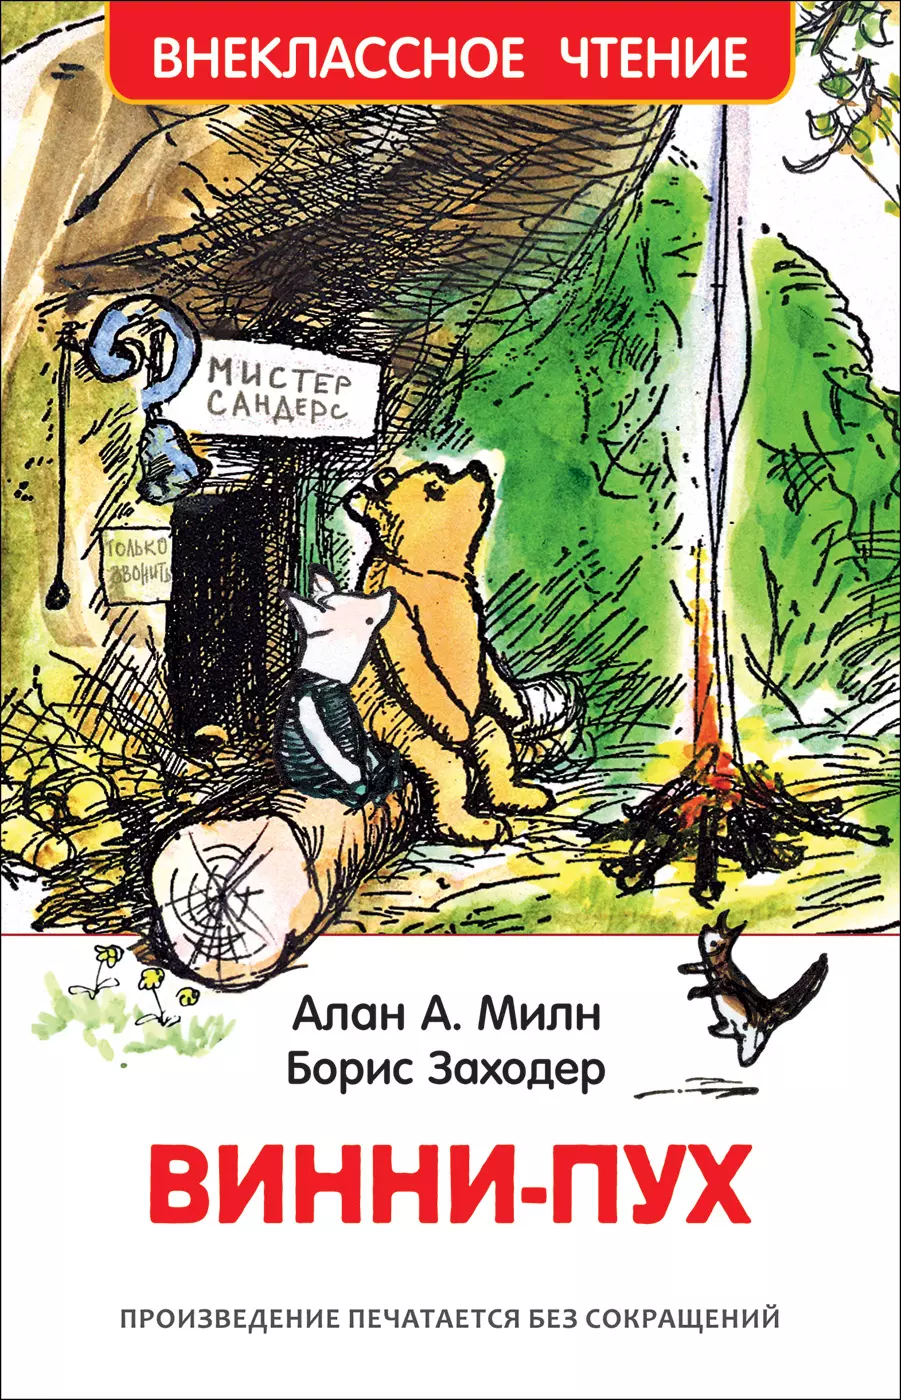 Книга Милн А. Винни-Пух. Внеклассное чтение. изд. Росмэн